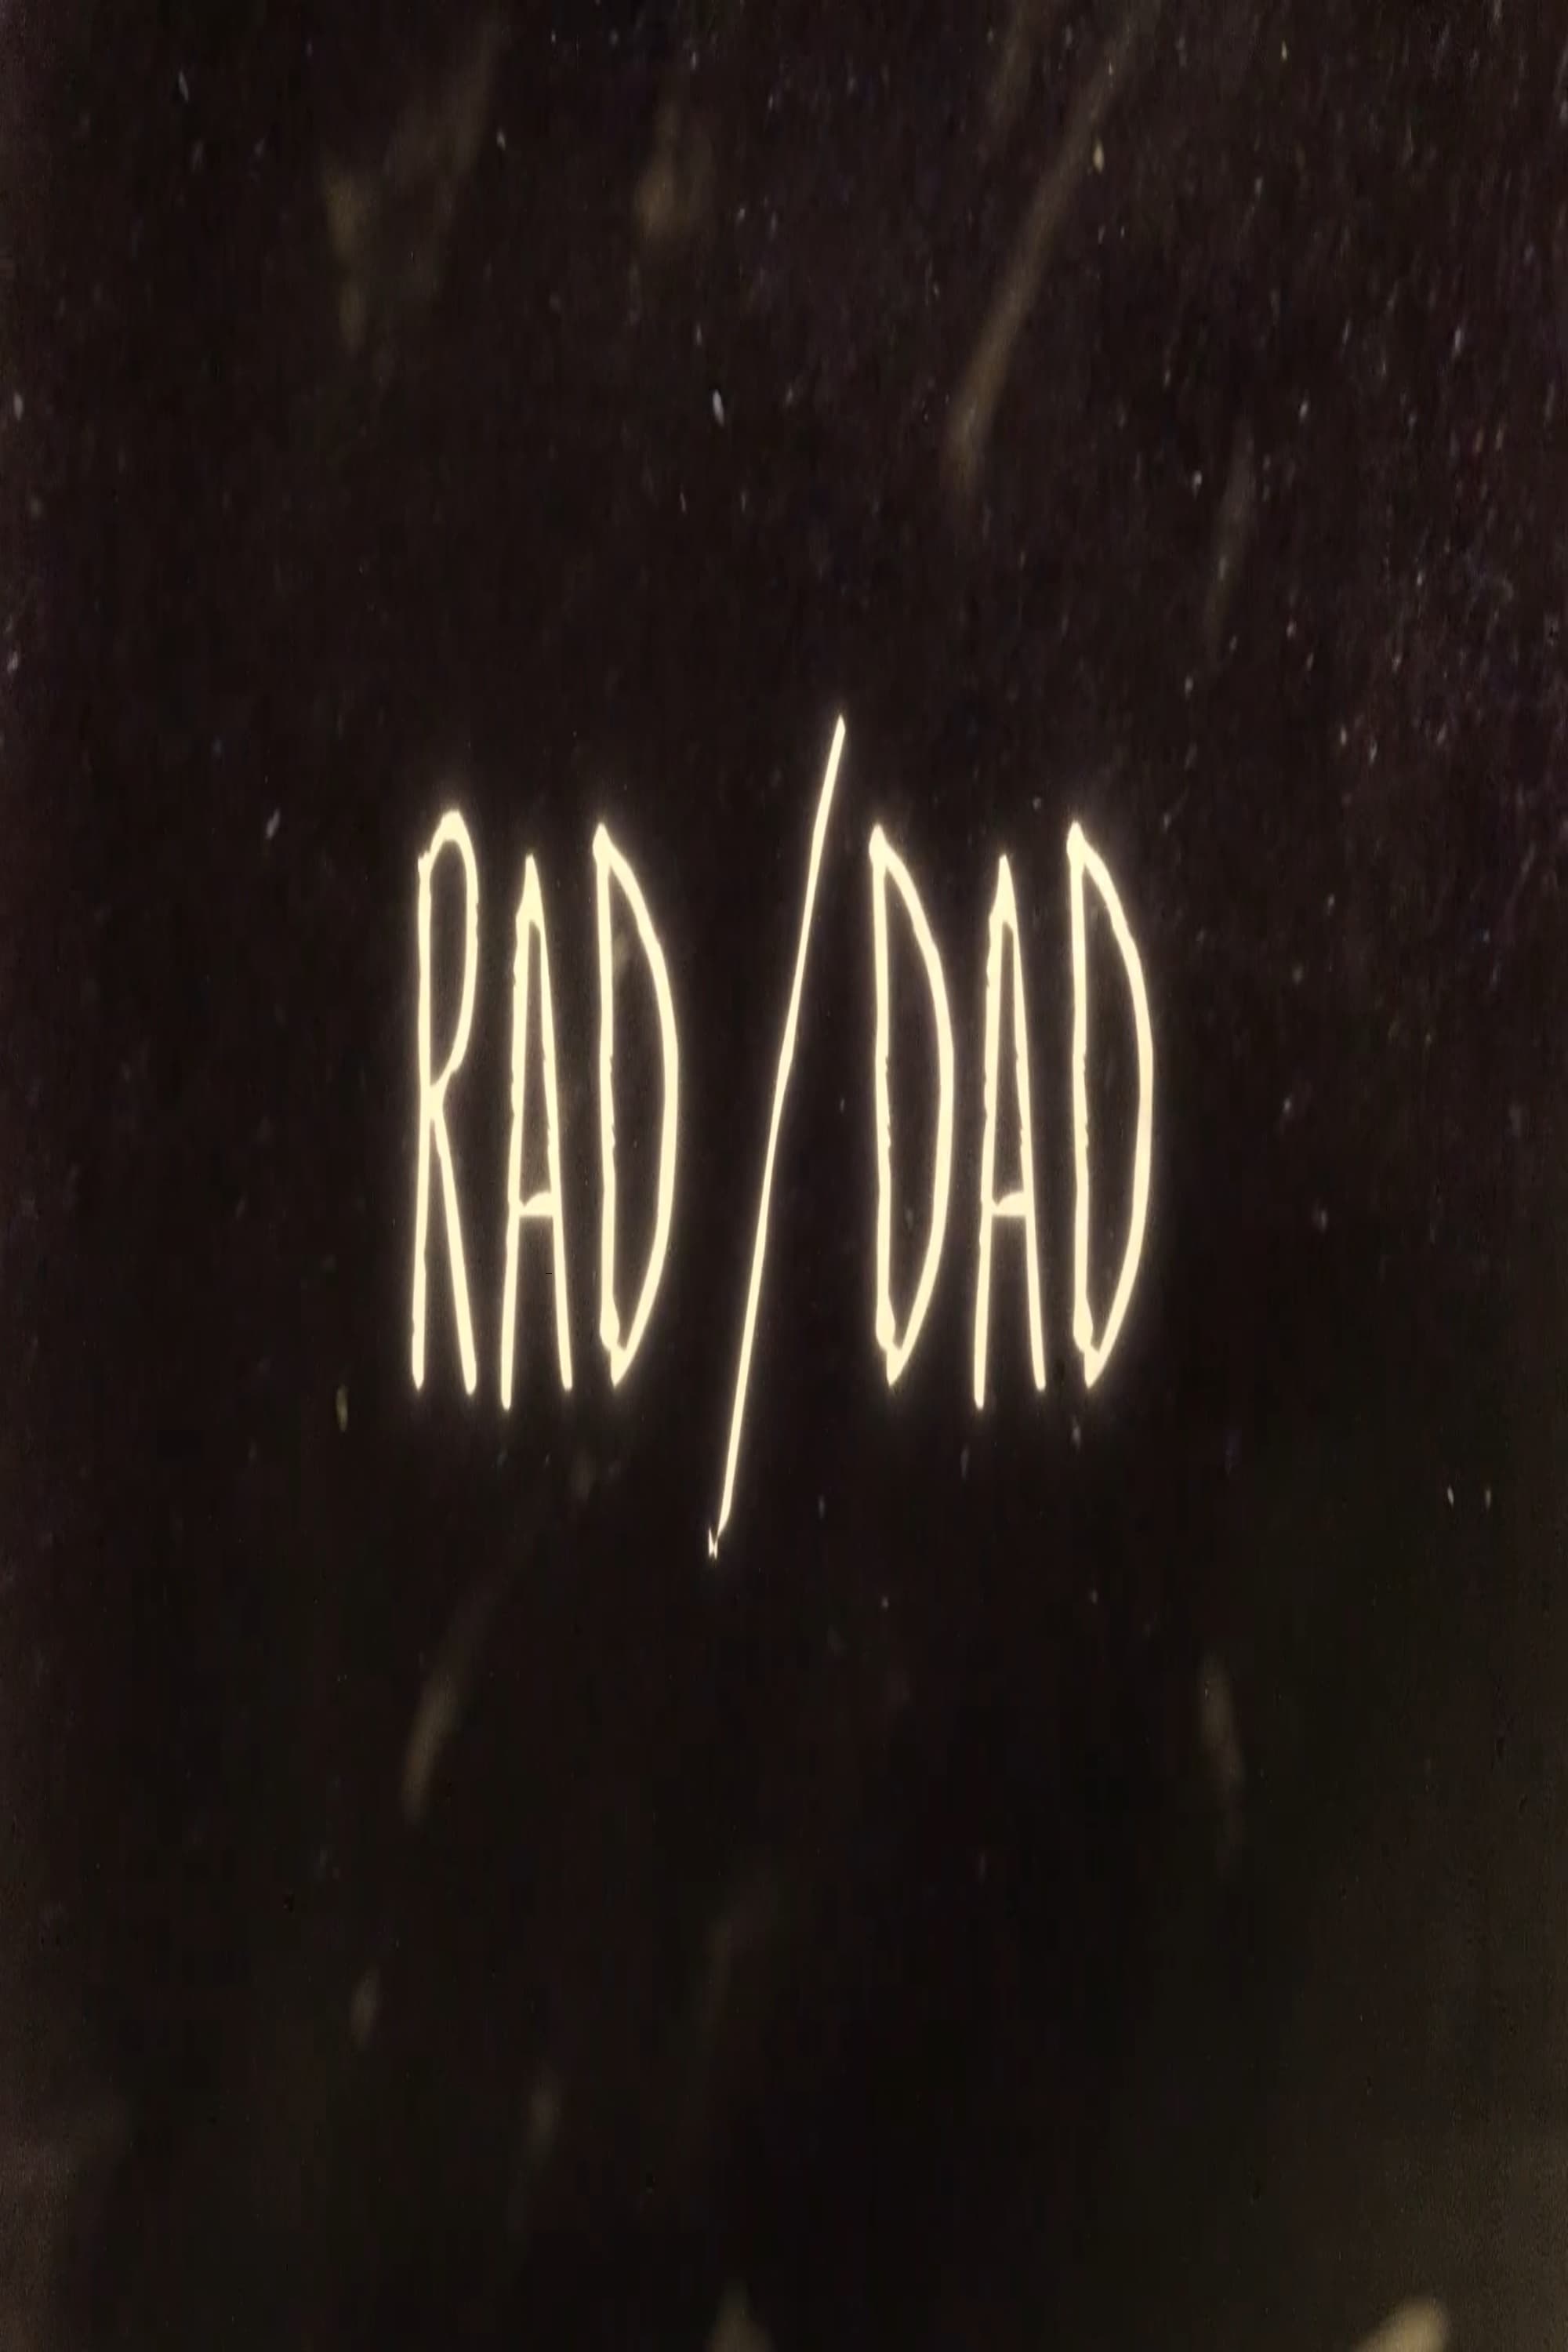 Rad/Dad